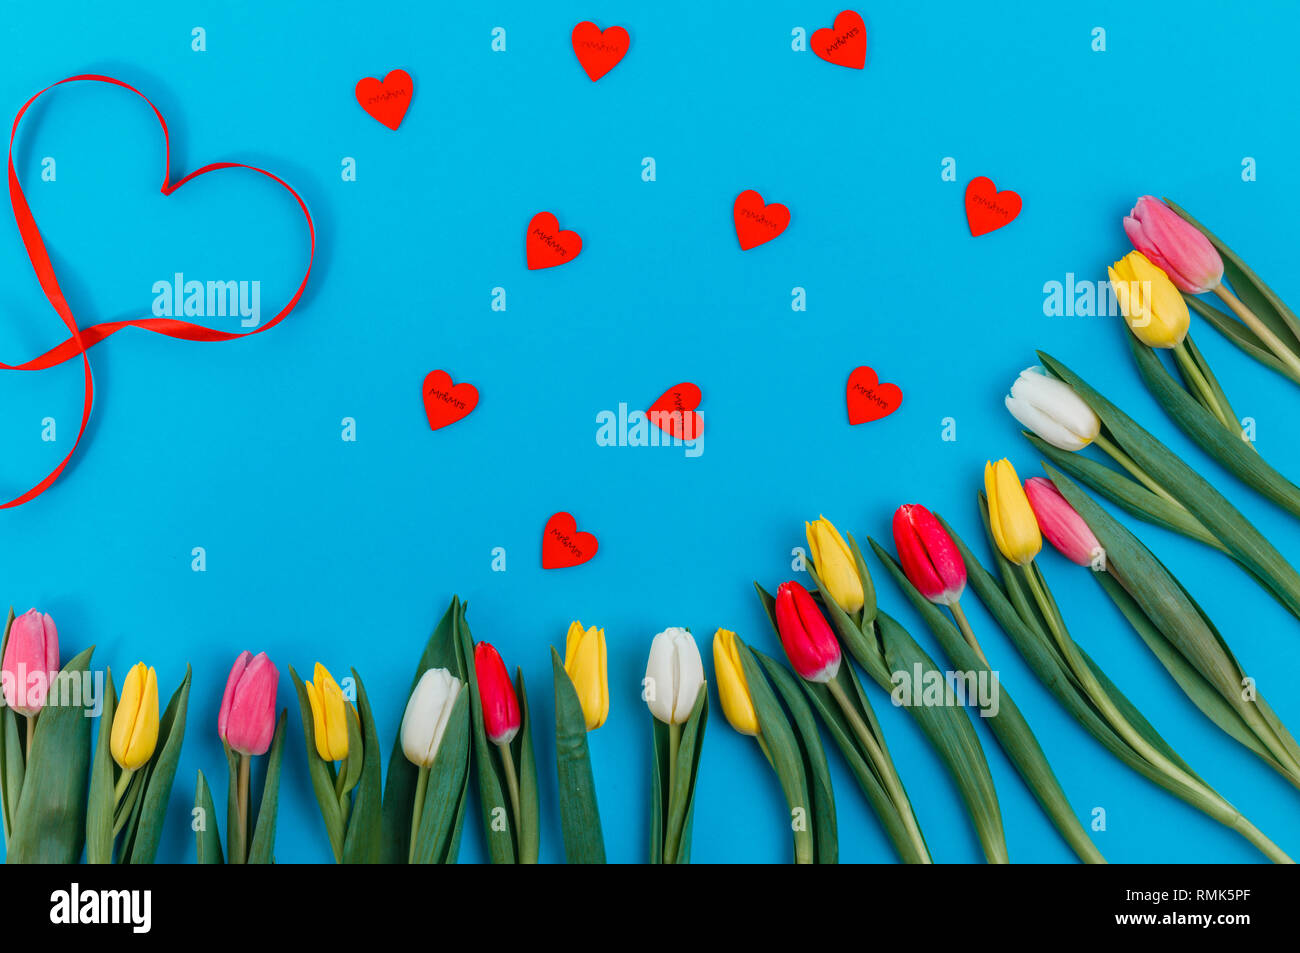 Concept de la Saint-Valentin. Saint-valentin tulipes. Carte de vœux pour la Saint Valentin, la Journée de la femme, la Fête des Mères. Banque D'Images